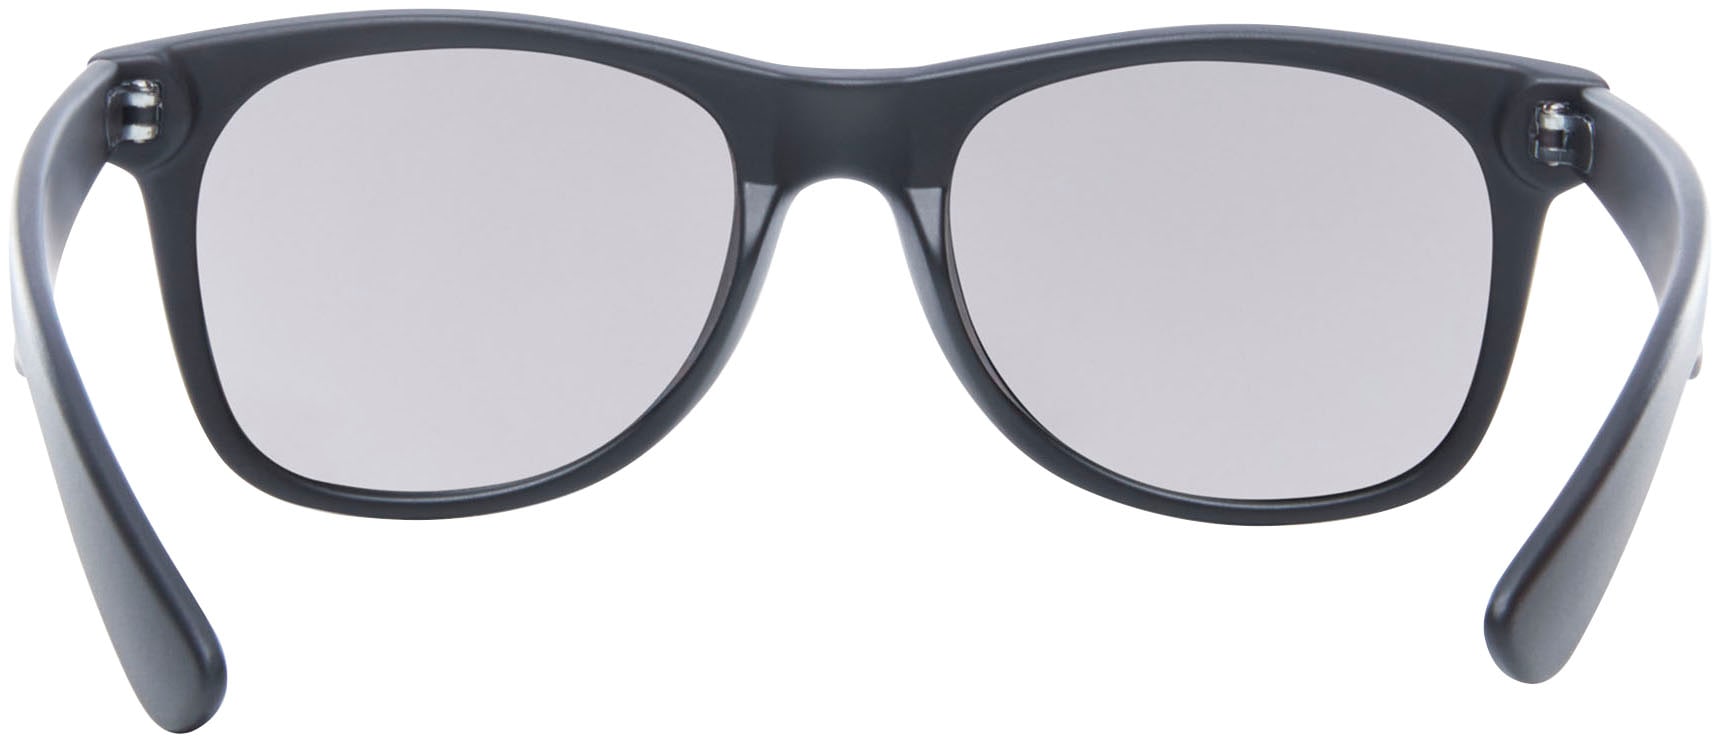 Vans Sonnenbrille »MN SPICOLI 4 SHADES« kaufen | I'm walking Online Shop